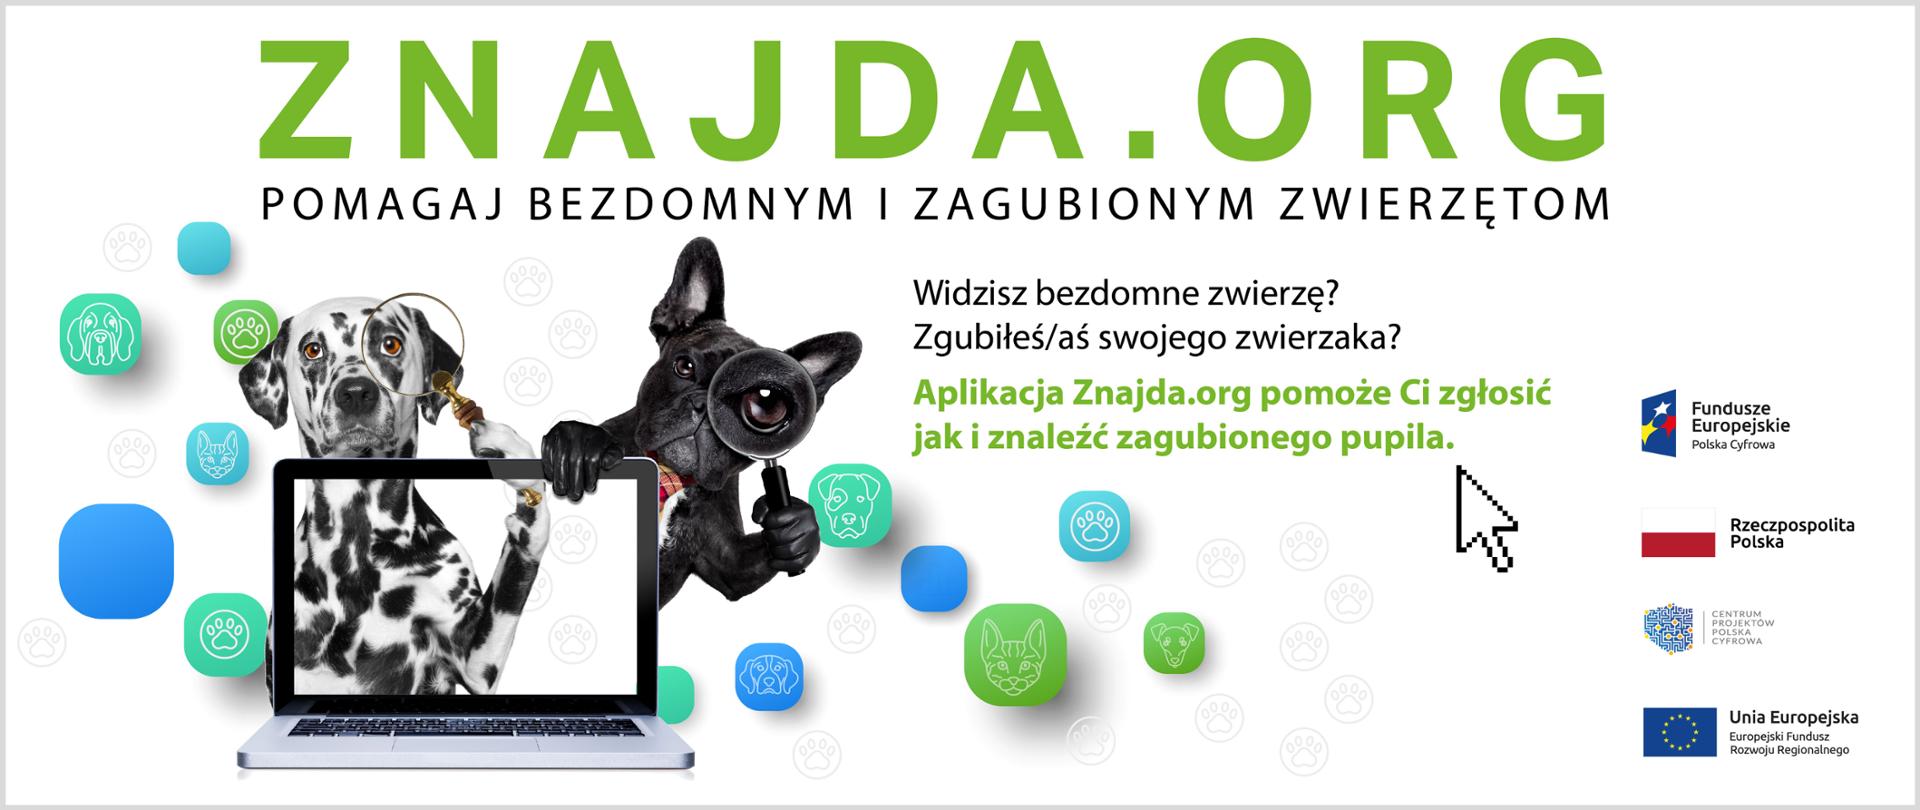 Aplikacja Znajda.org - Opracowanie i wdrożenie aplikacji wspierającej e-administrację w walce z bezdomnością zwierząt